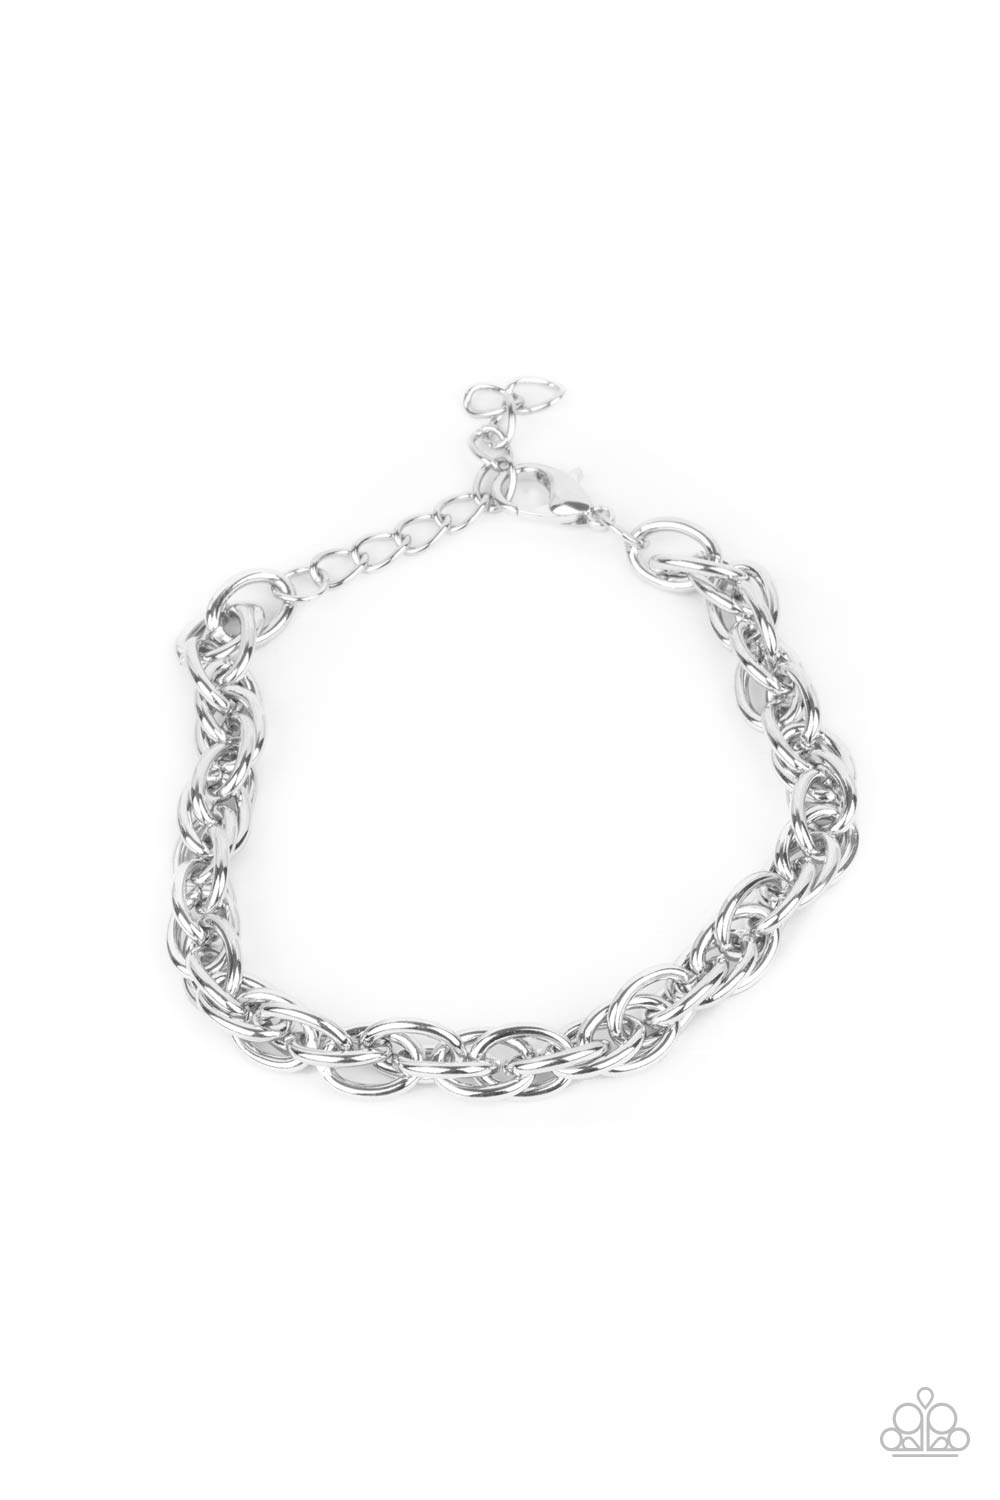 Extra Entrepreneur Men's Necklace & Executive Exclusive - Silver Men's Bracelet Combo Set - Princess Glam Shop